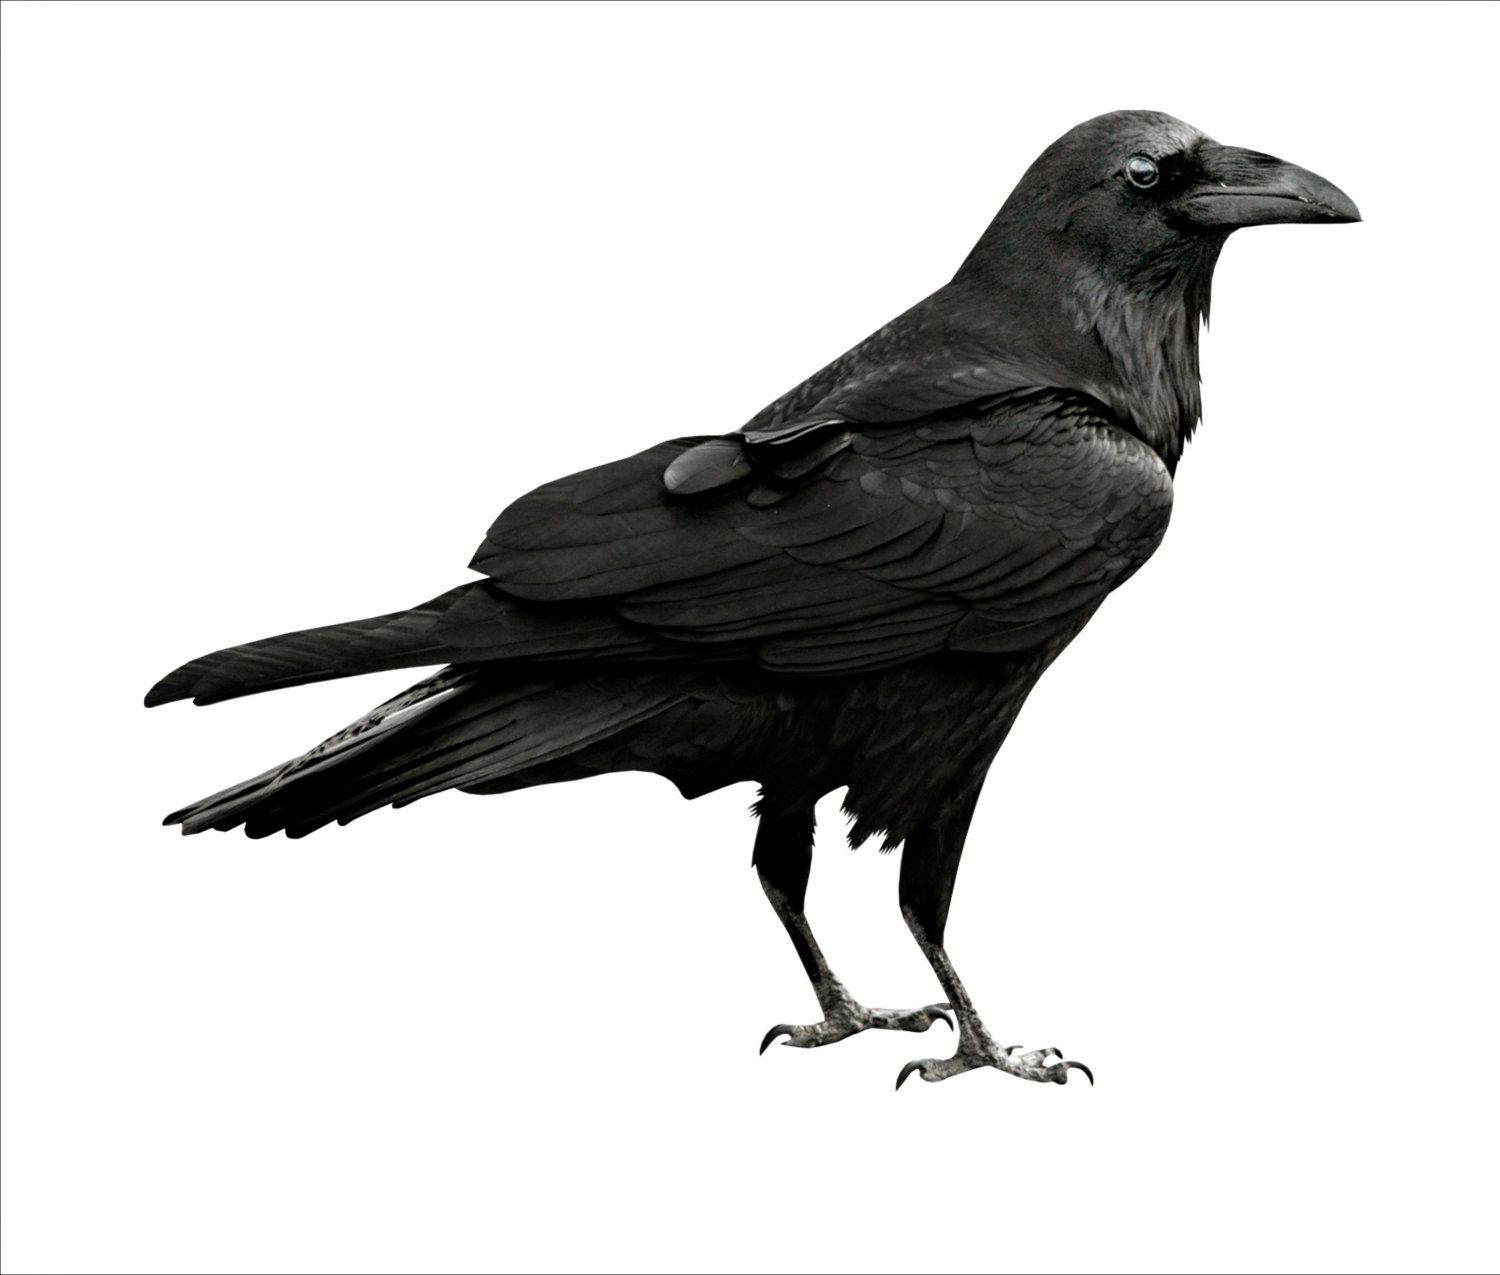 BLACK BIRD IMAGE, Crow Image, Crow Cutout, Bird Cutout